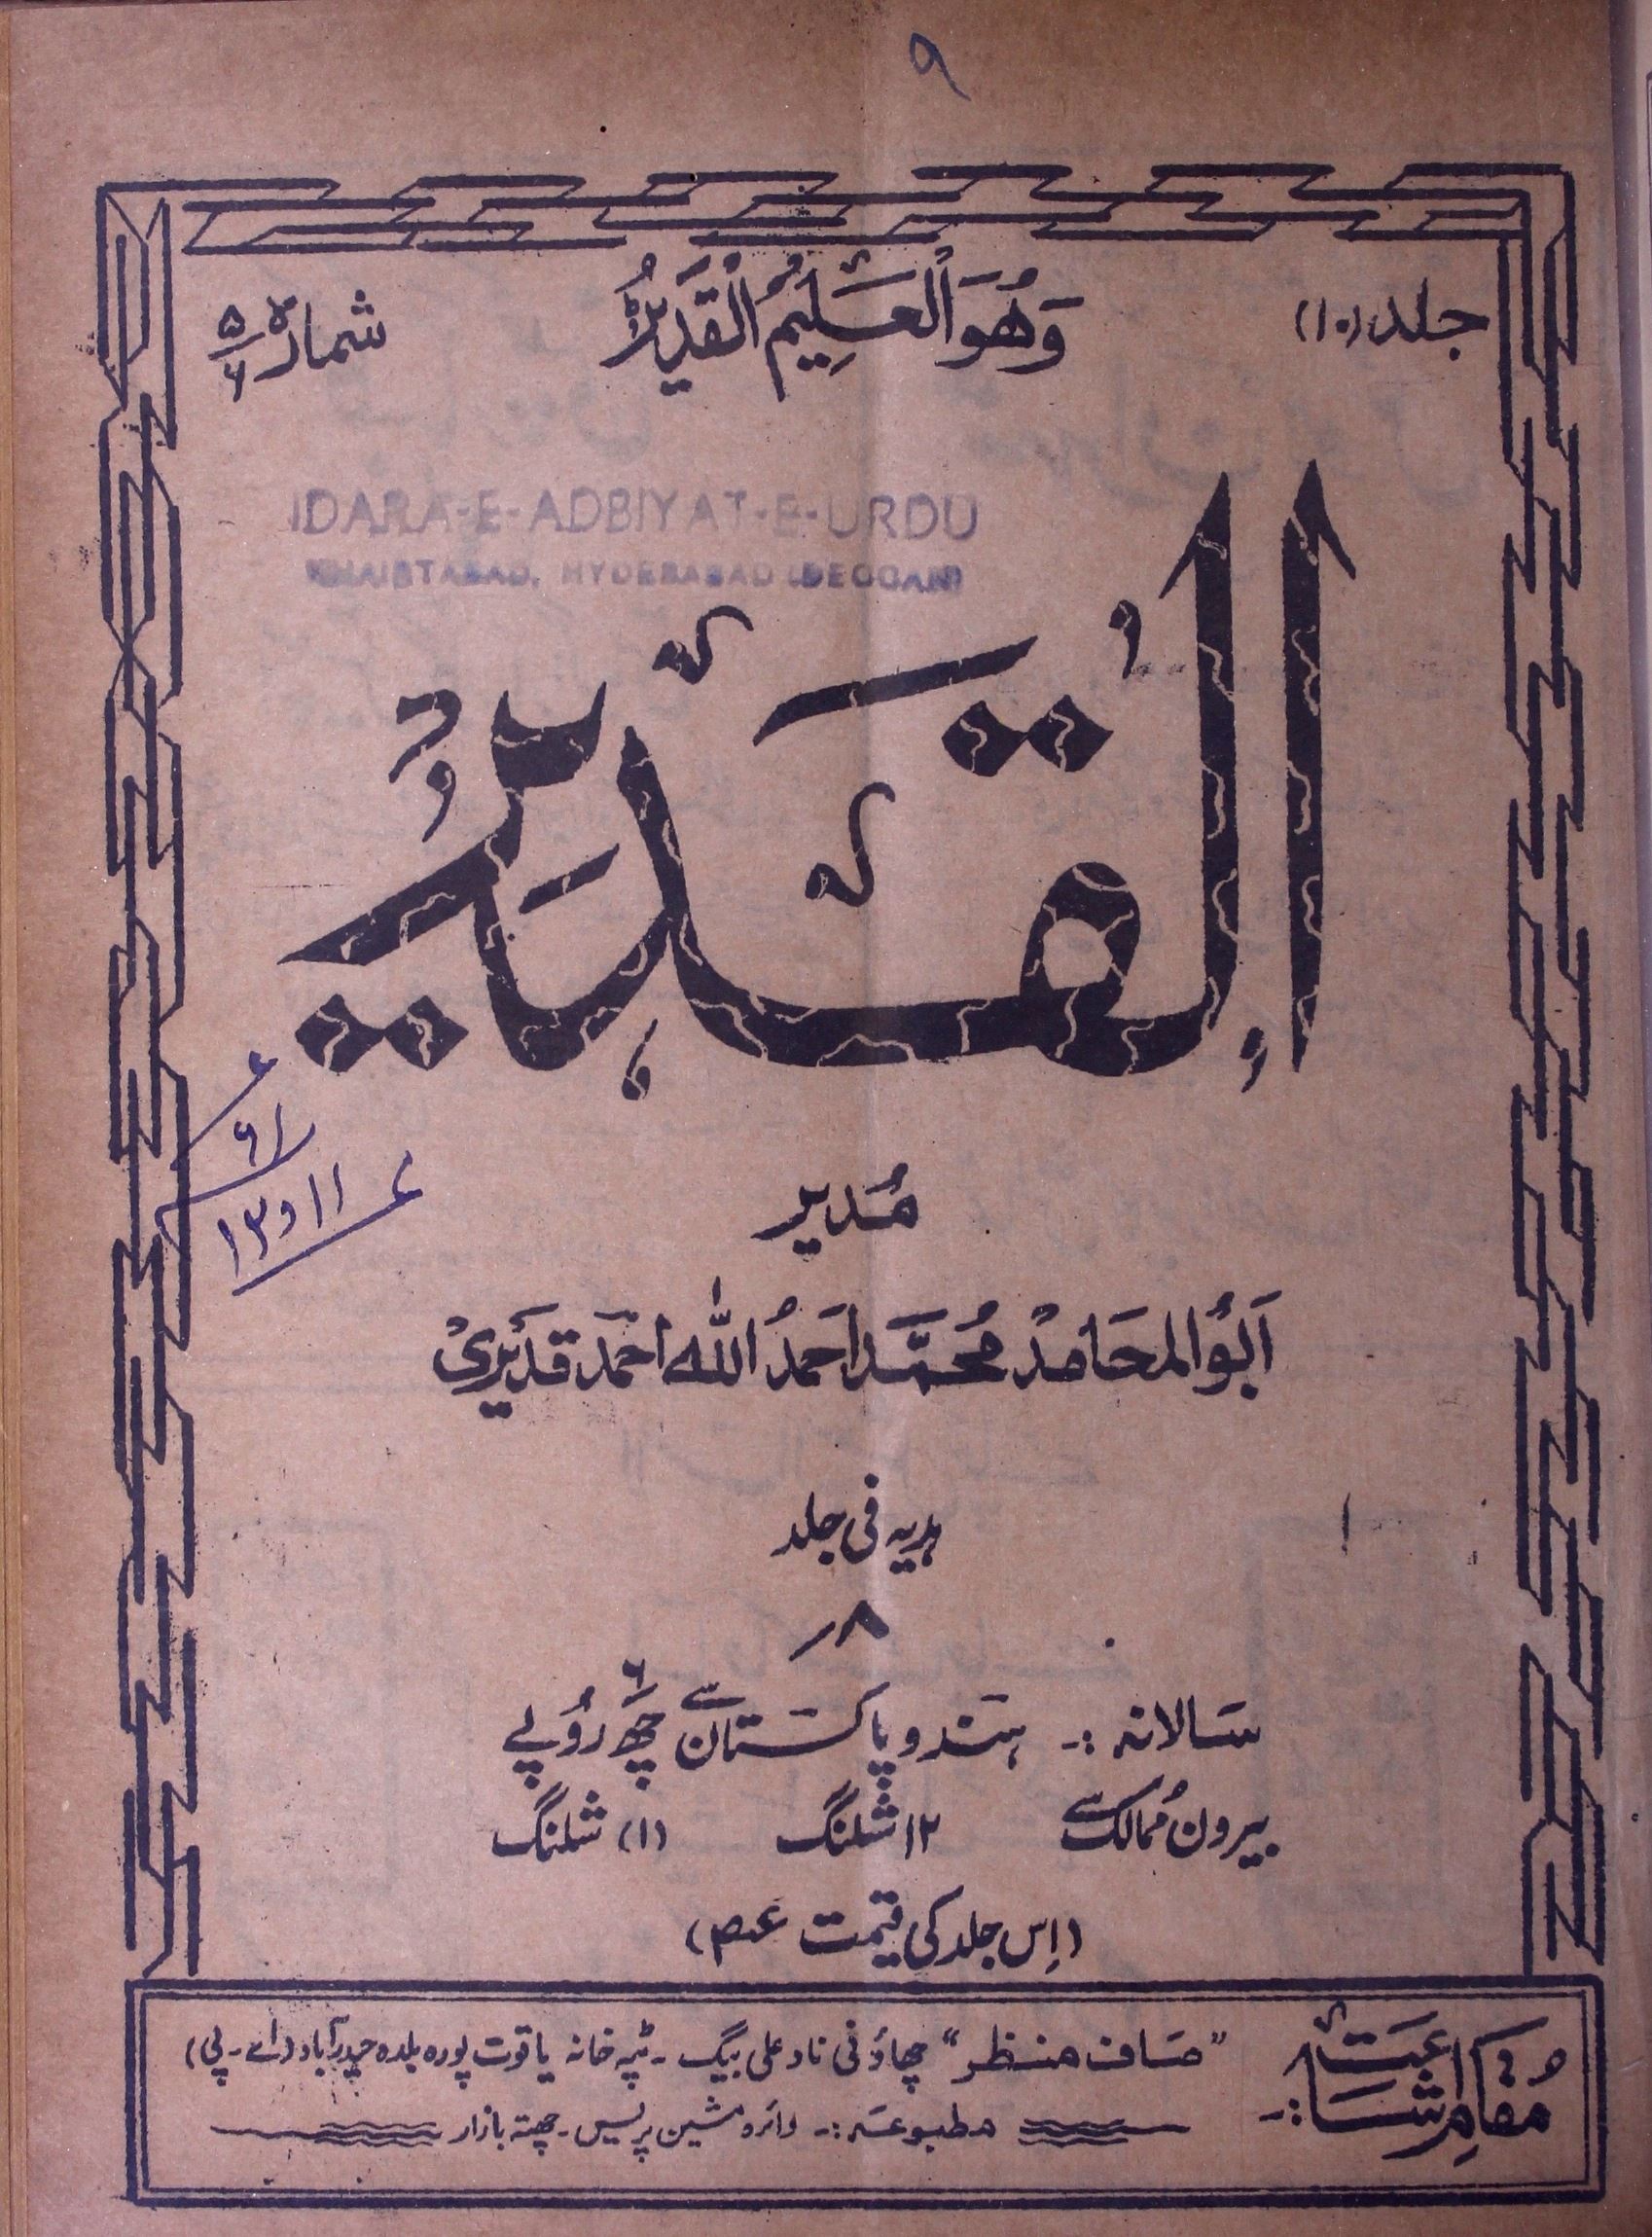 Al Qadeer Jild 10 Sh. 4-5 Nov.-Dec. 1960